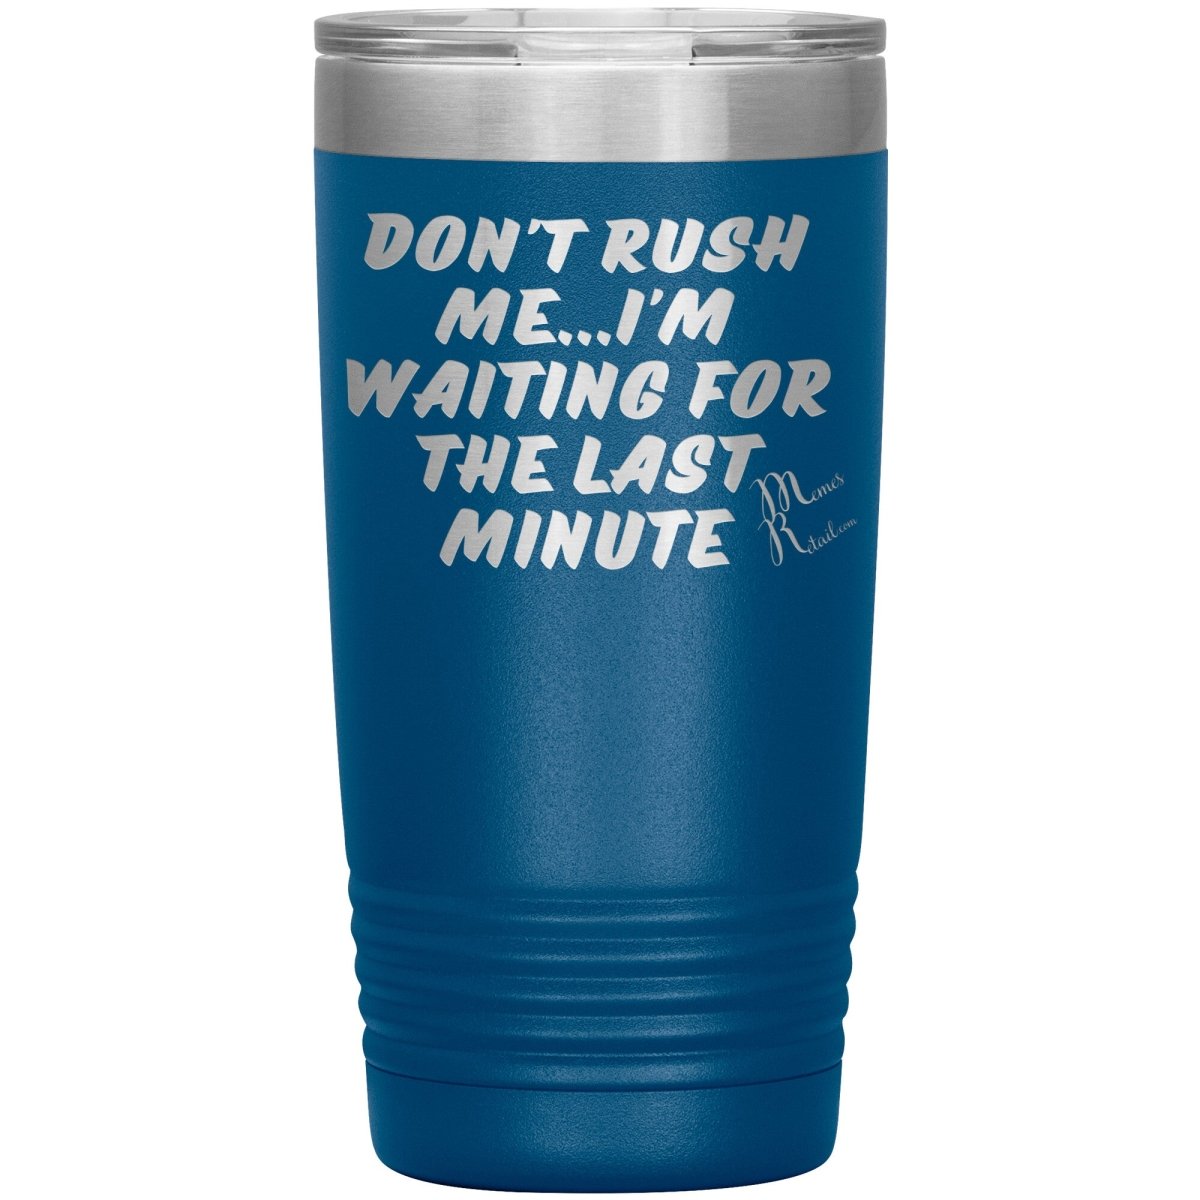 Don't Rush Me... I'm Waiting For The Last Minute Tumbers, 20oz Insulated Tumbler / Blue - MemesRetail.com